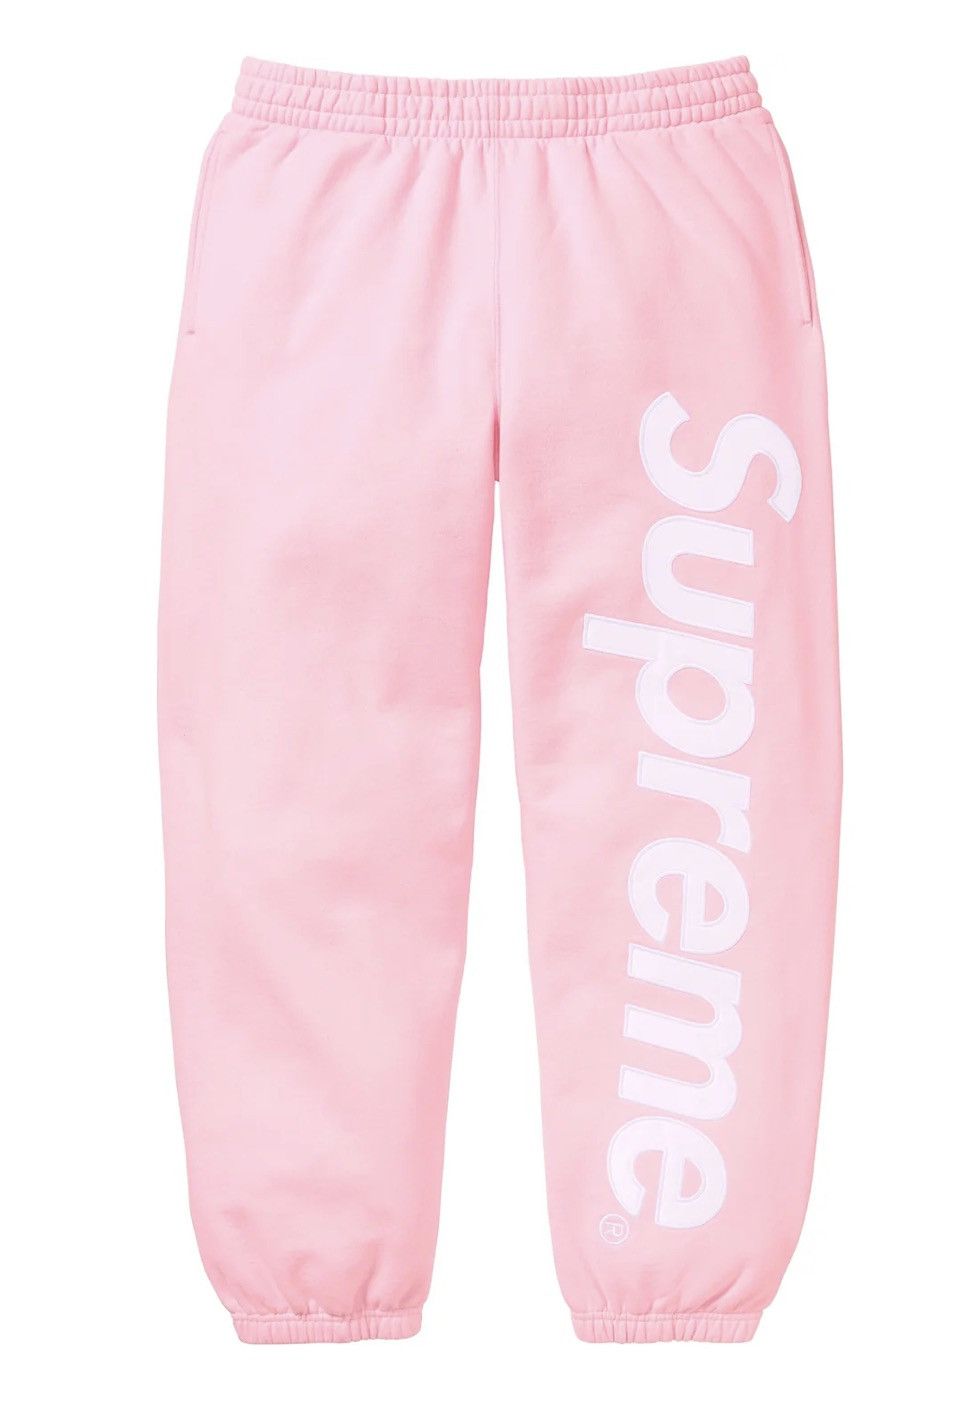 Supreme supreme satin Appliqué Sweatpant pink color size large